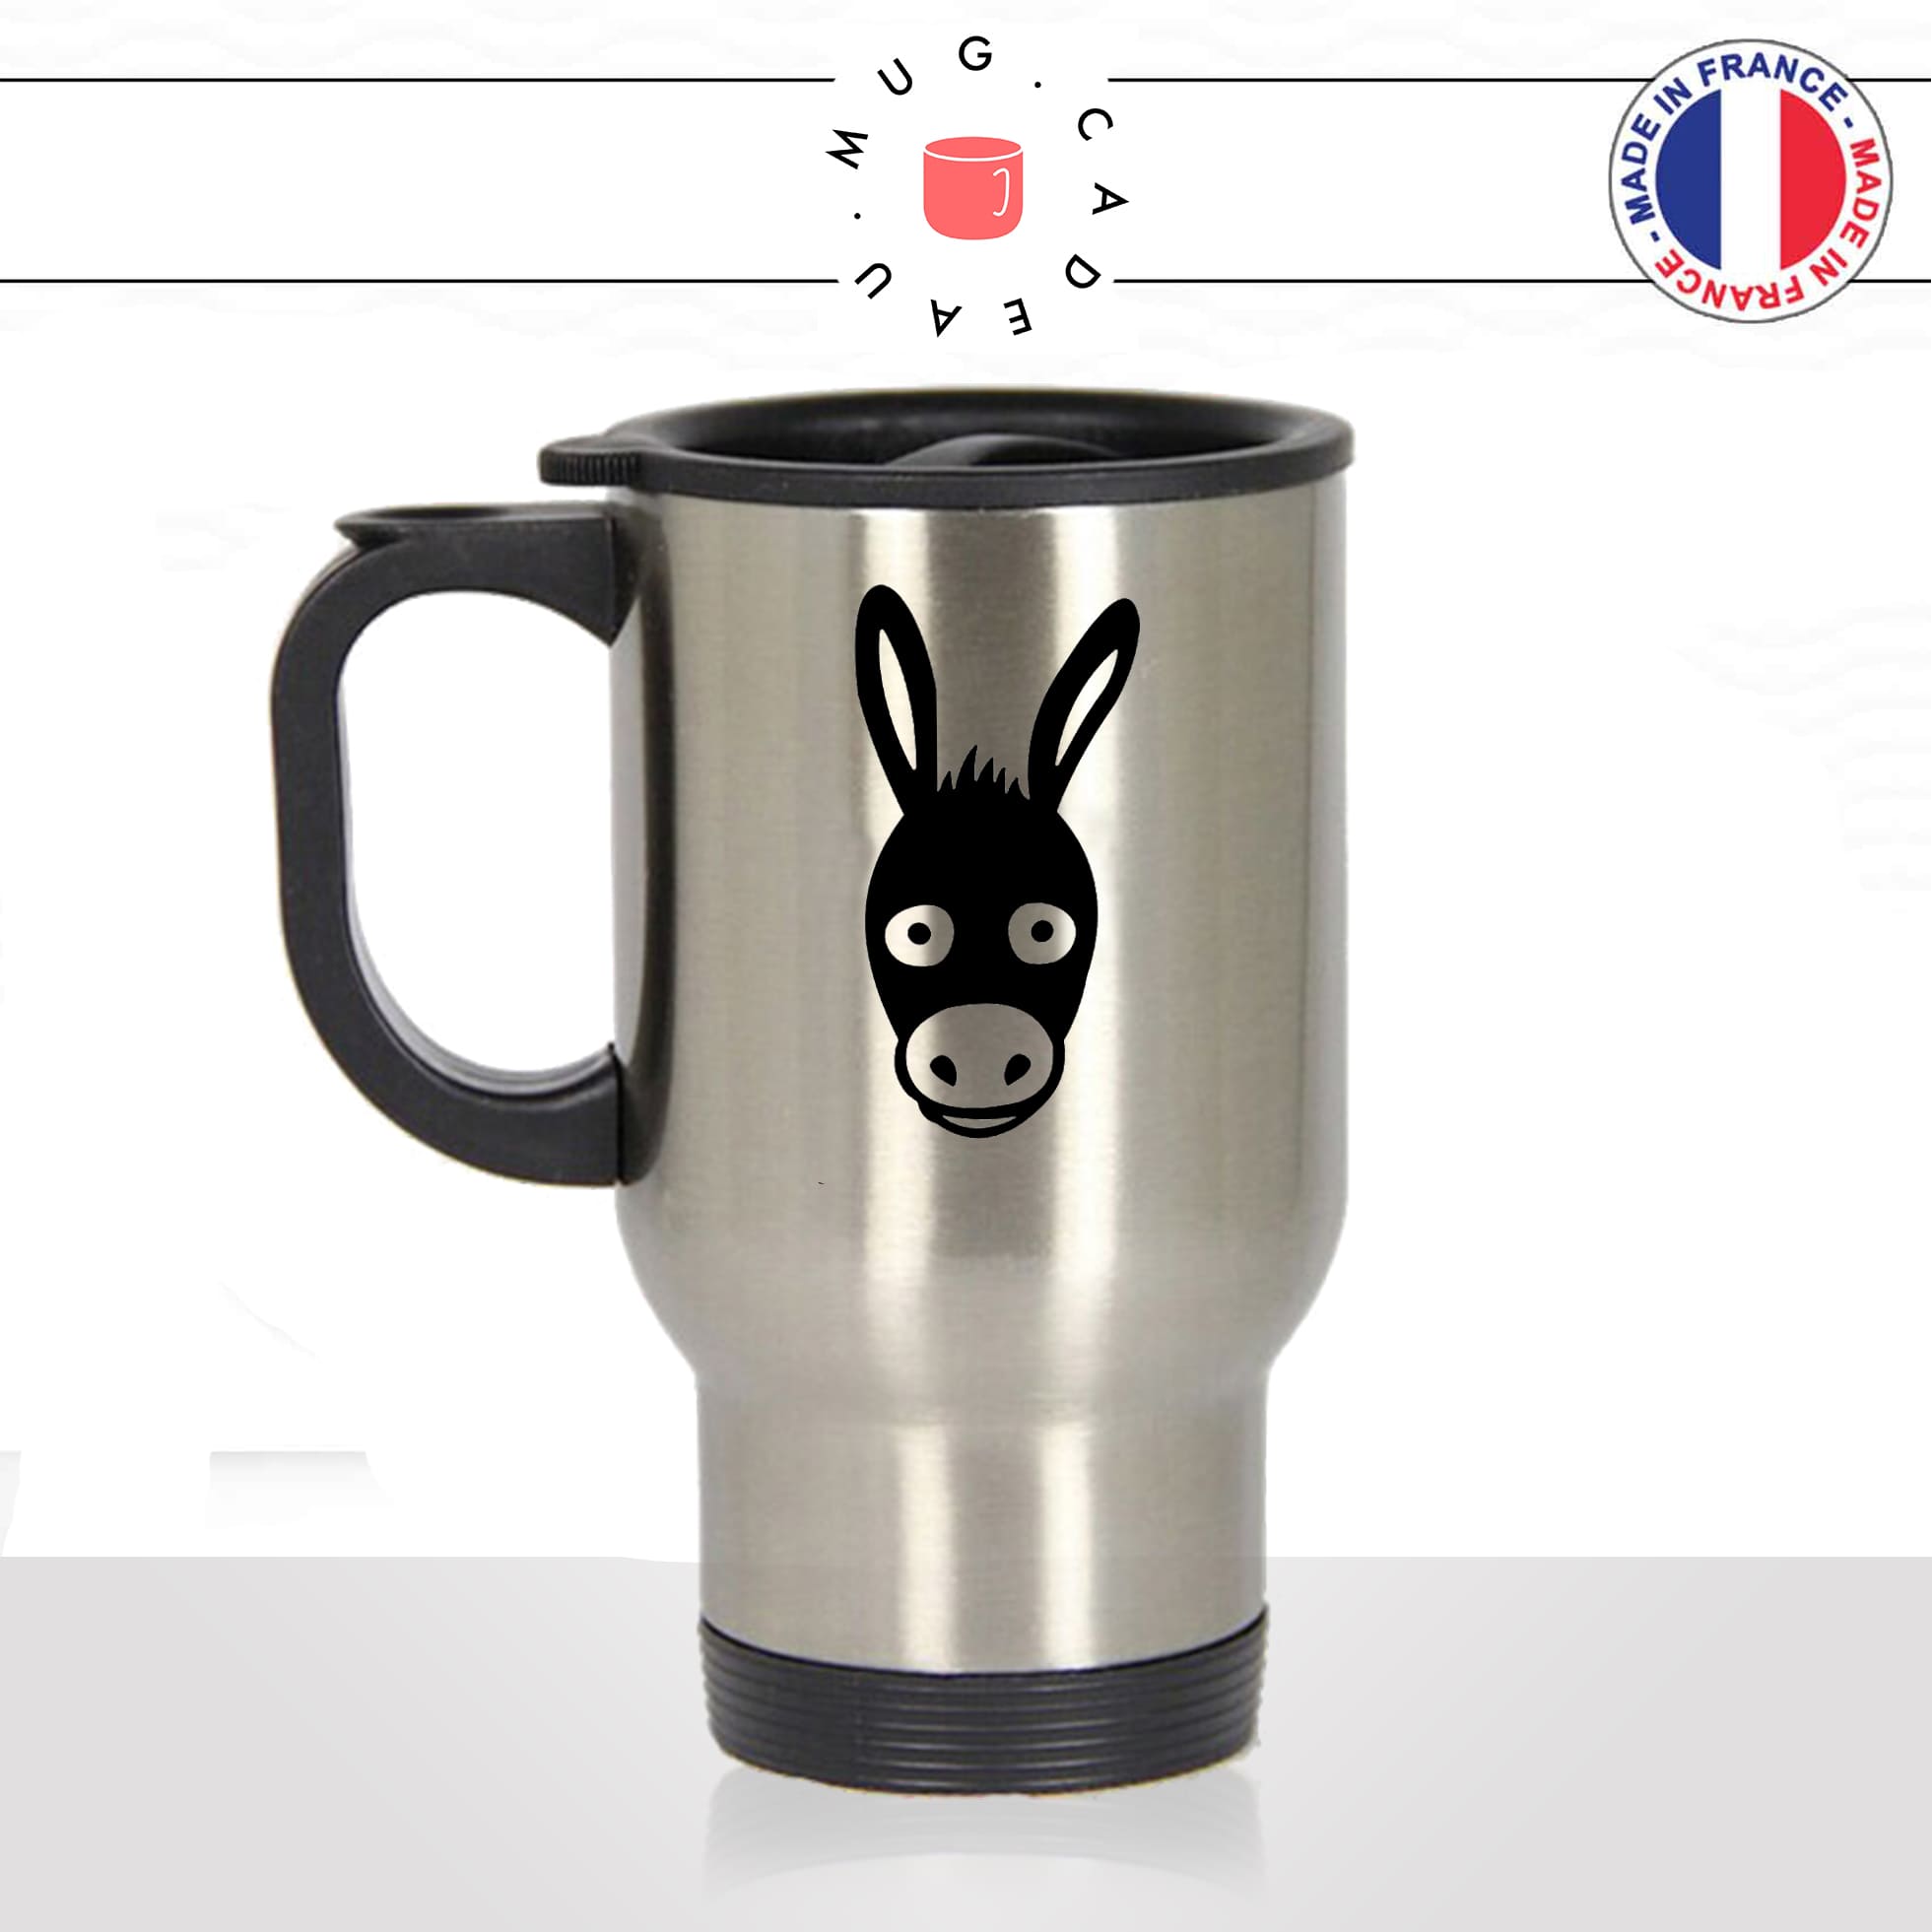 mug-tasse-thermos-isotherme-voyage-dessin-tete-de-mule-cheval-ane-expression-animaux-humour-fun-idée-cadeau-originale-cool